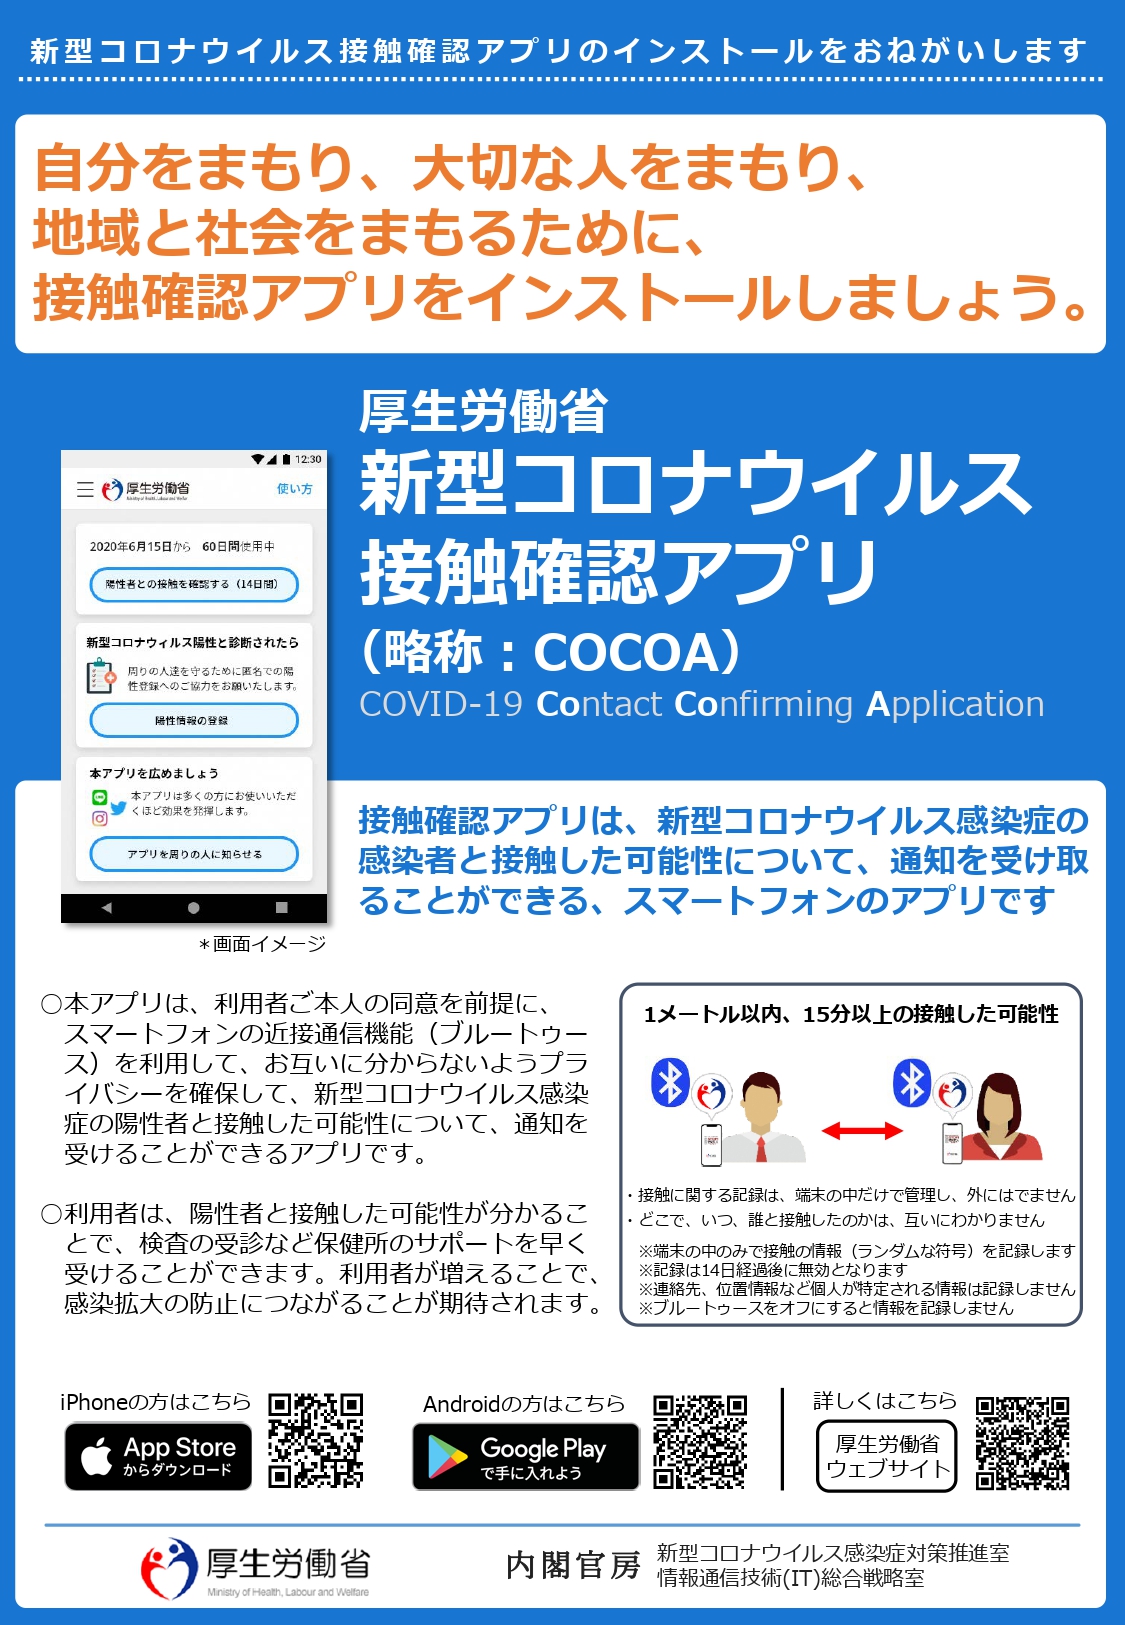 新型コロナウイルス接触確認アプリのインストールをお願いします 匝瑳市公式ホームページ